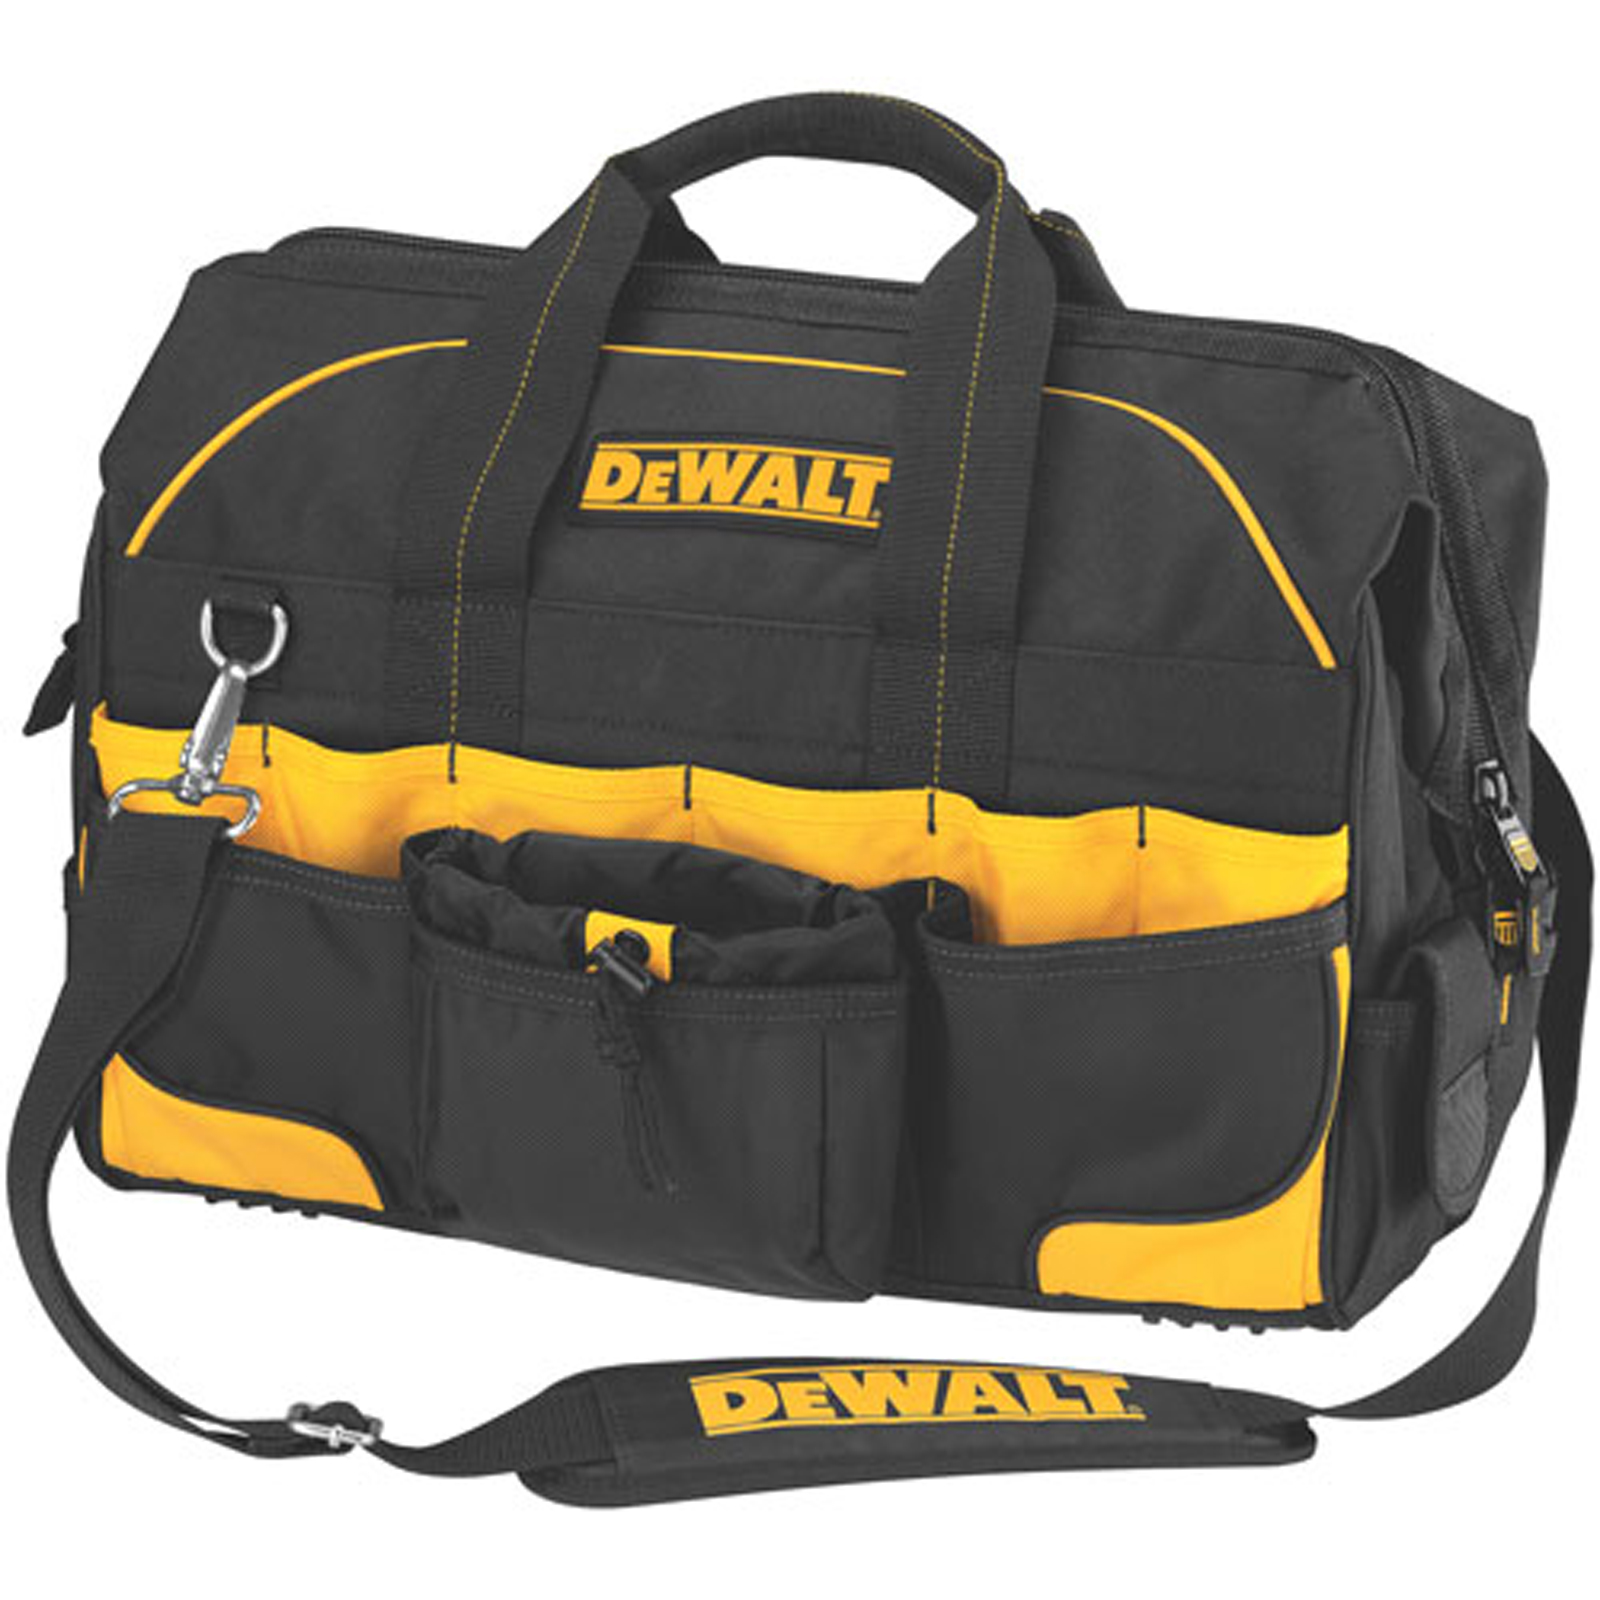 DeWalt 18" Pro Contractor's Closed-Top Tool Bag